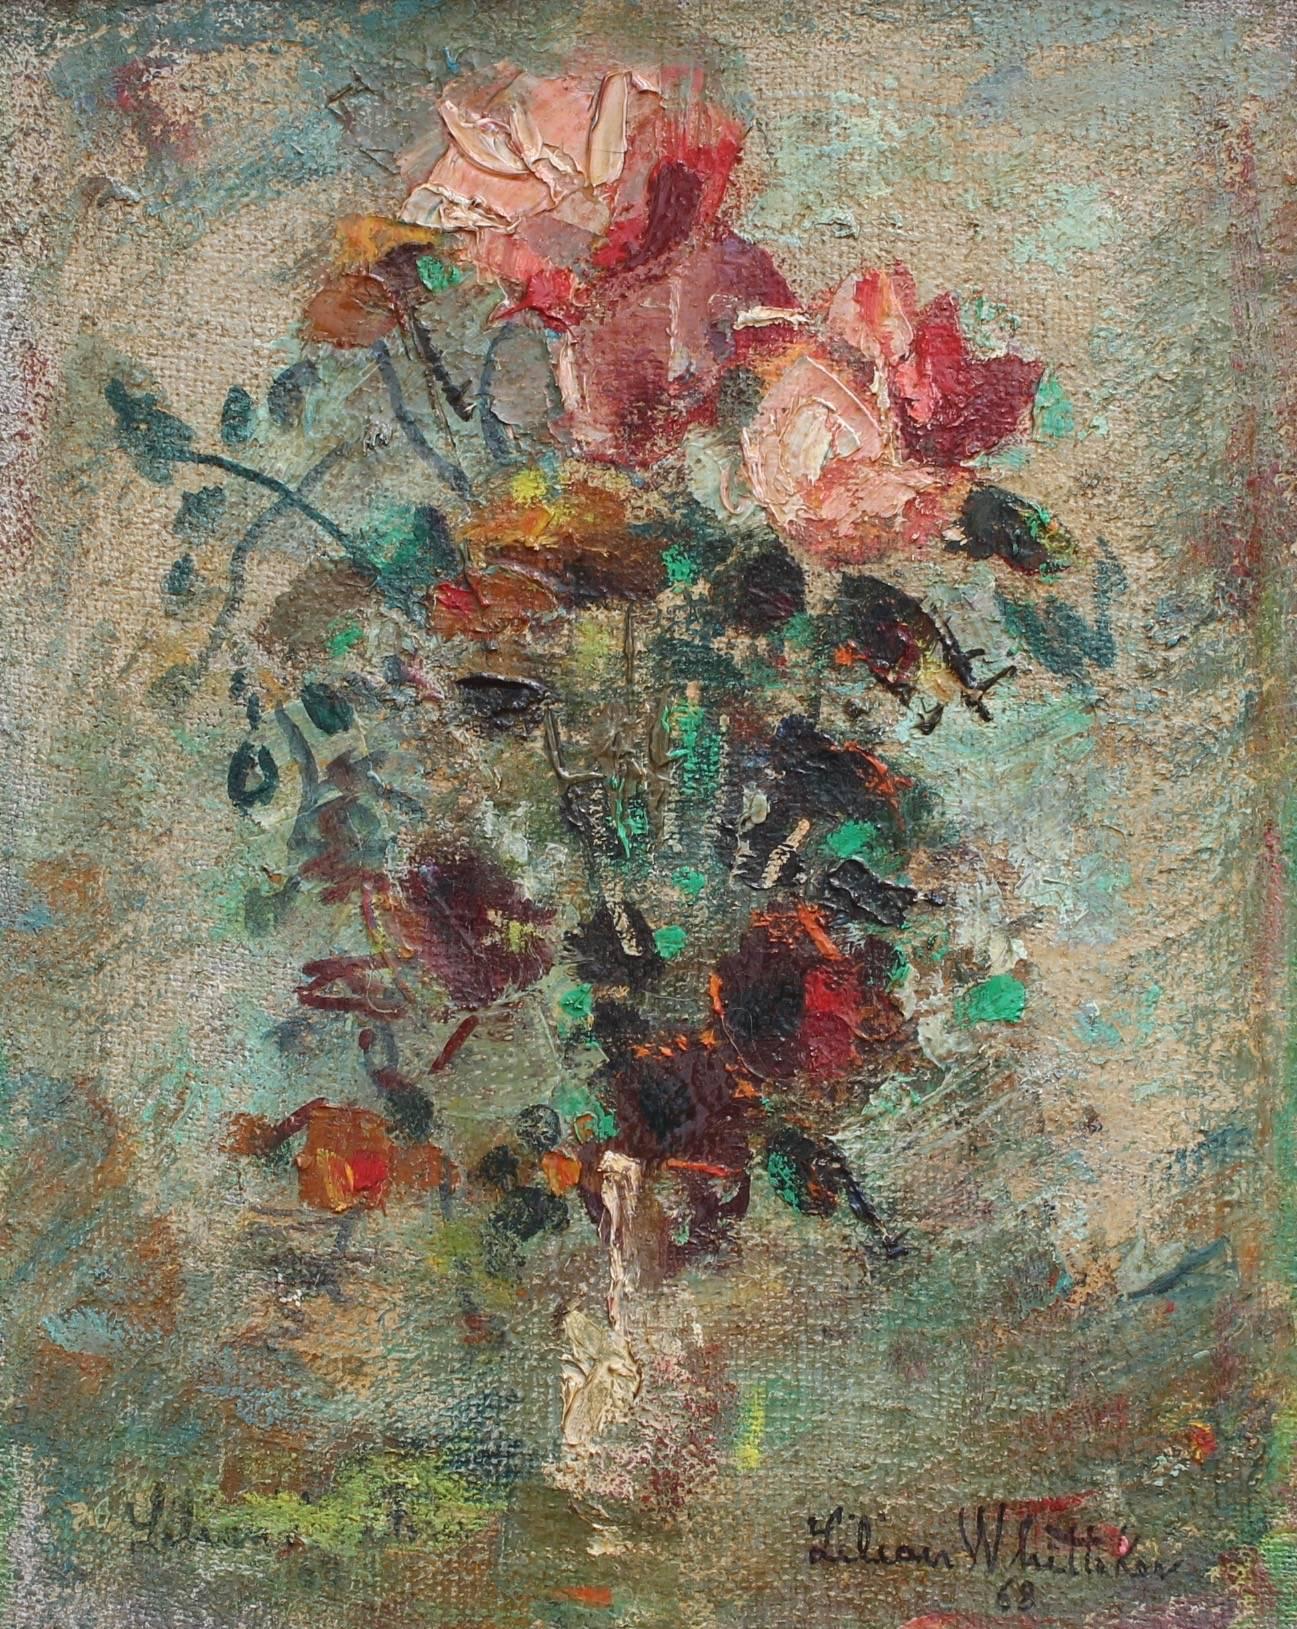 Lilian E. Whitteker Still-Life Painting - Flower Arrangement in Vase